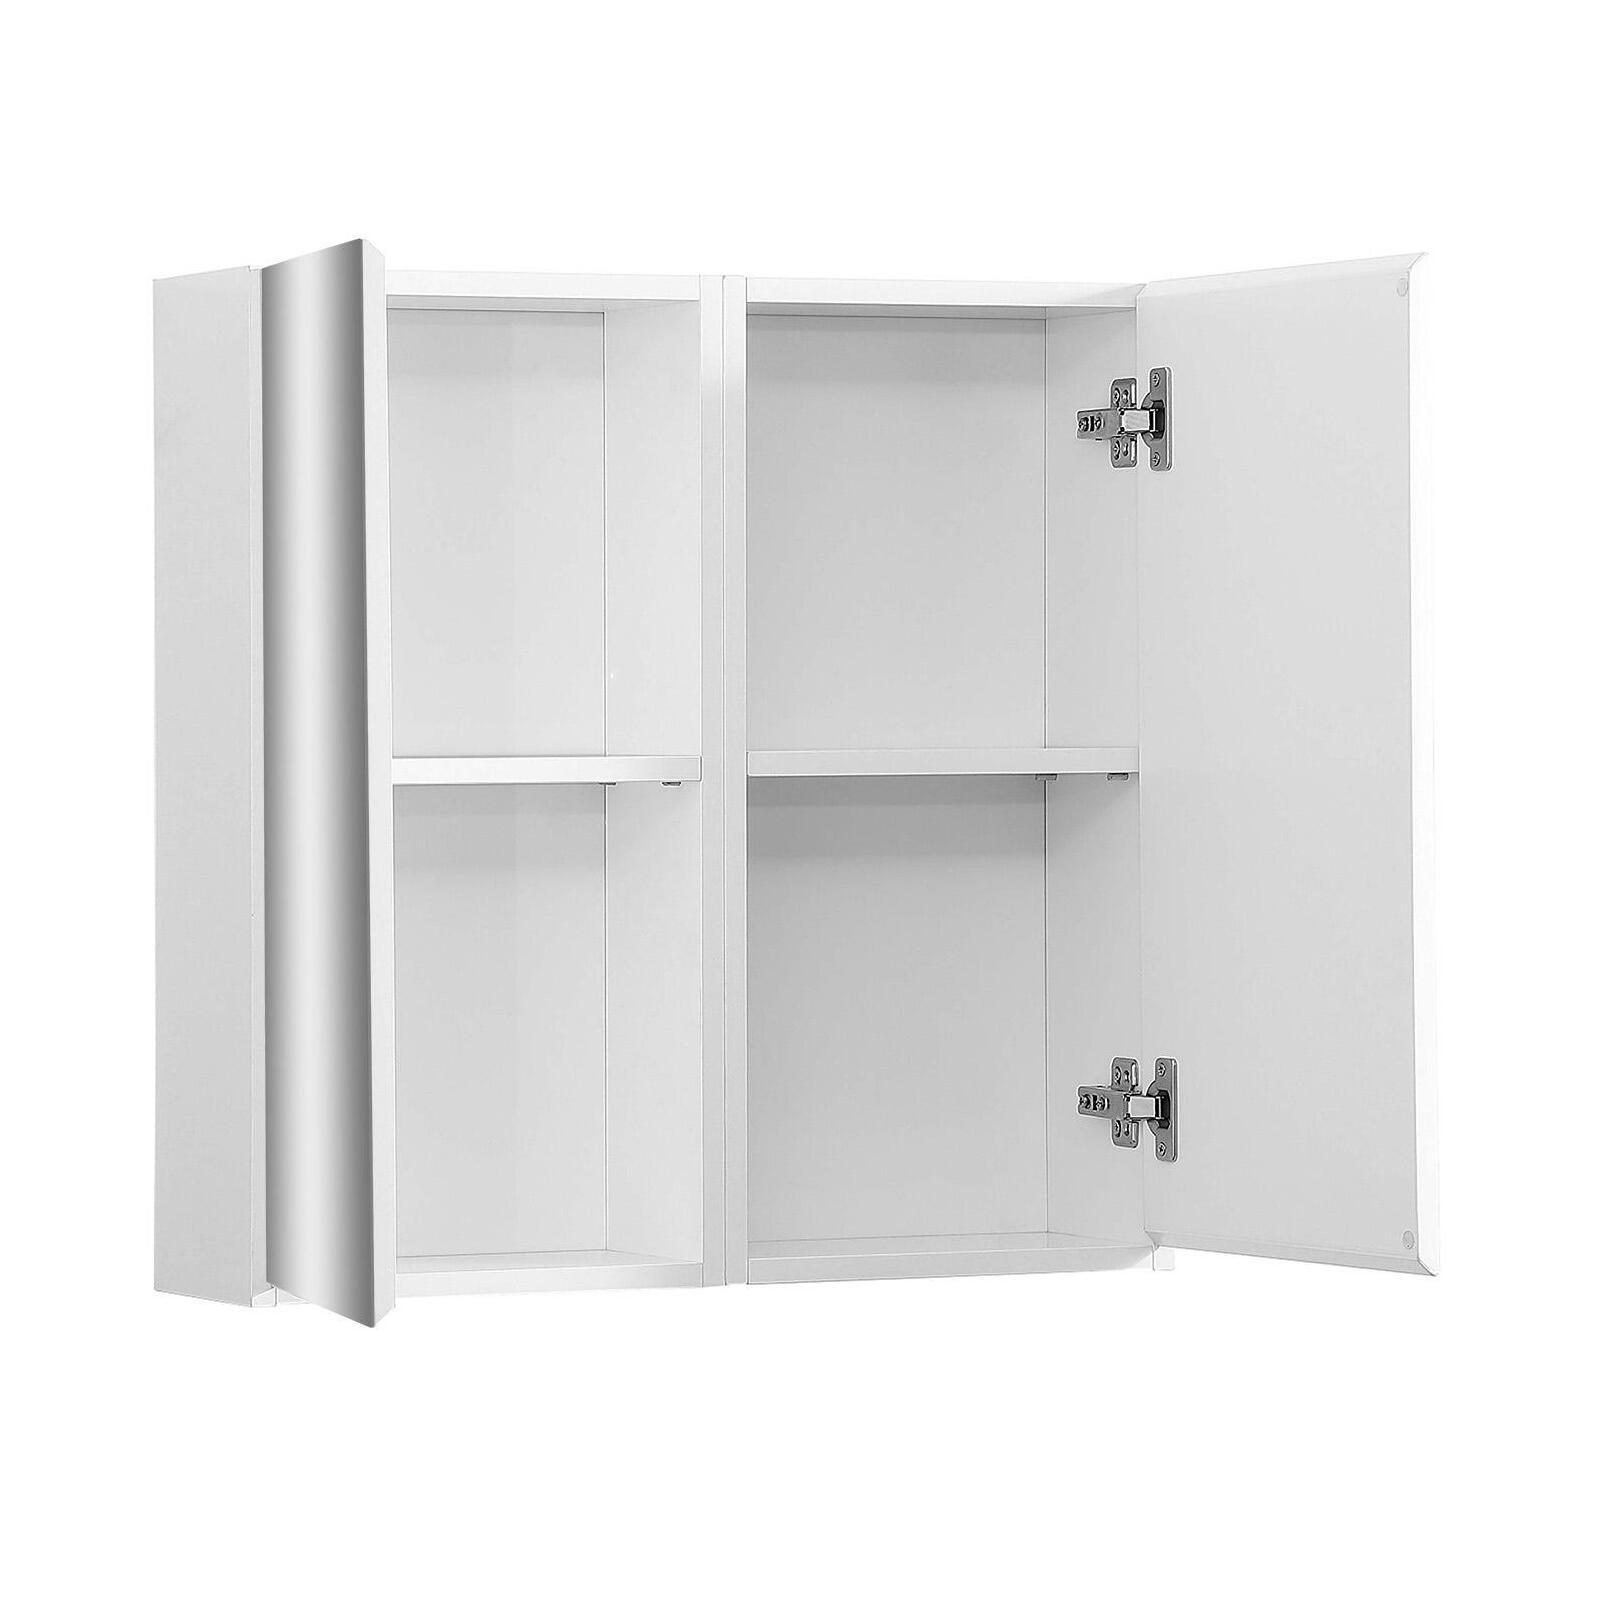 Soldes - Armoire penderie 2 portes en bois recyclé blanc -Rivages -  Interior's